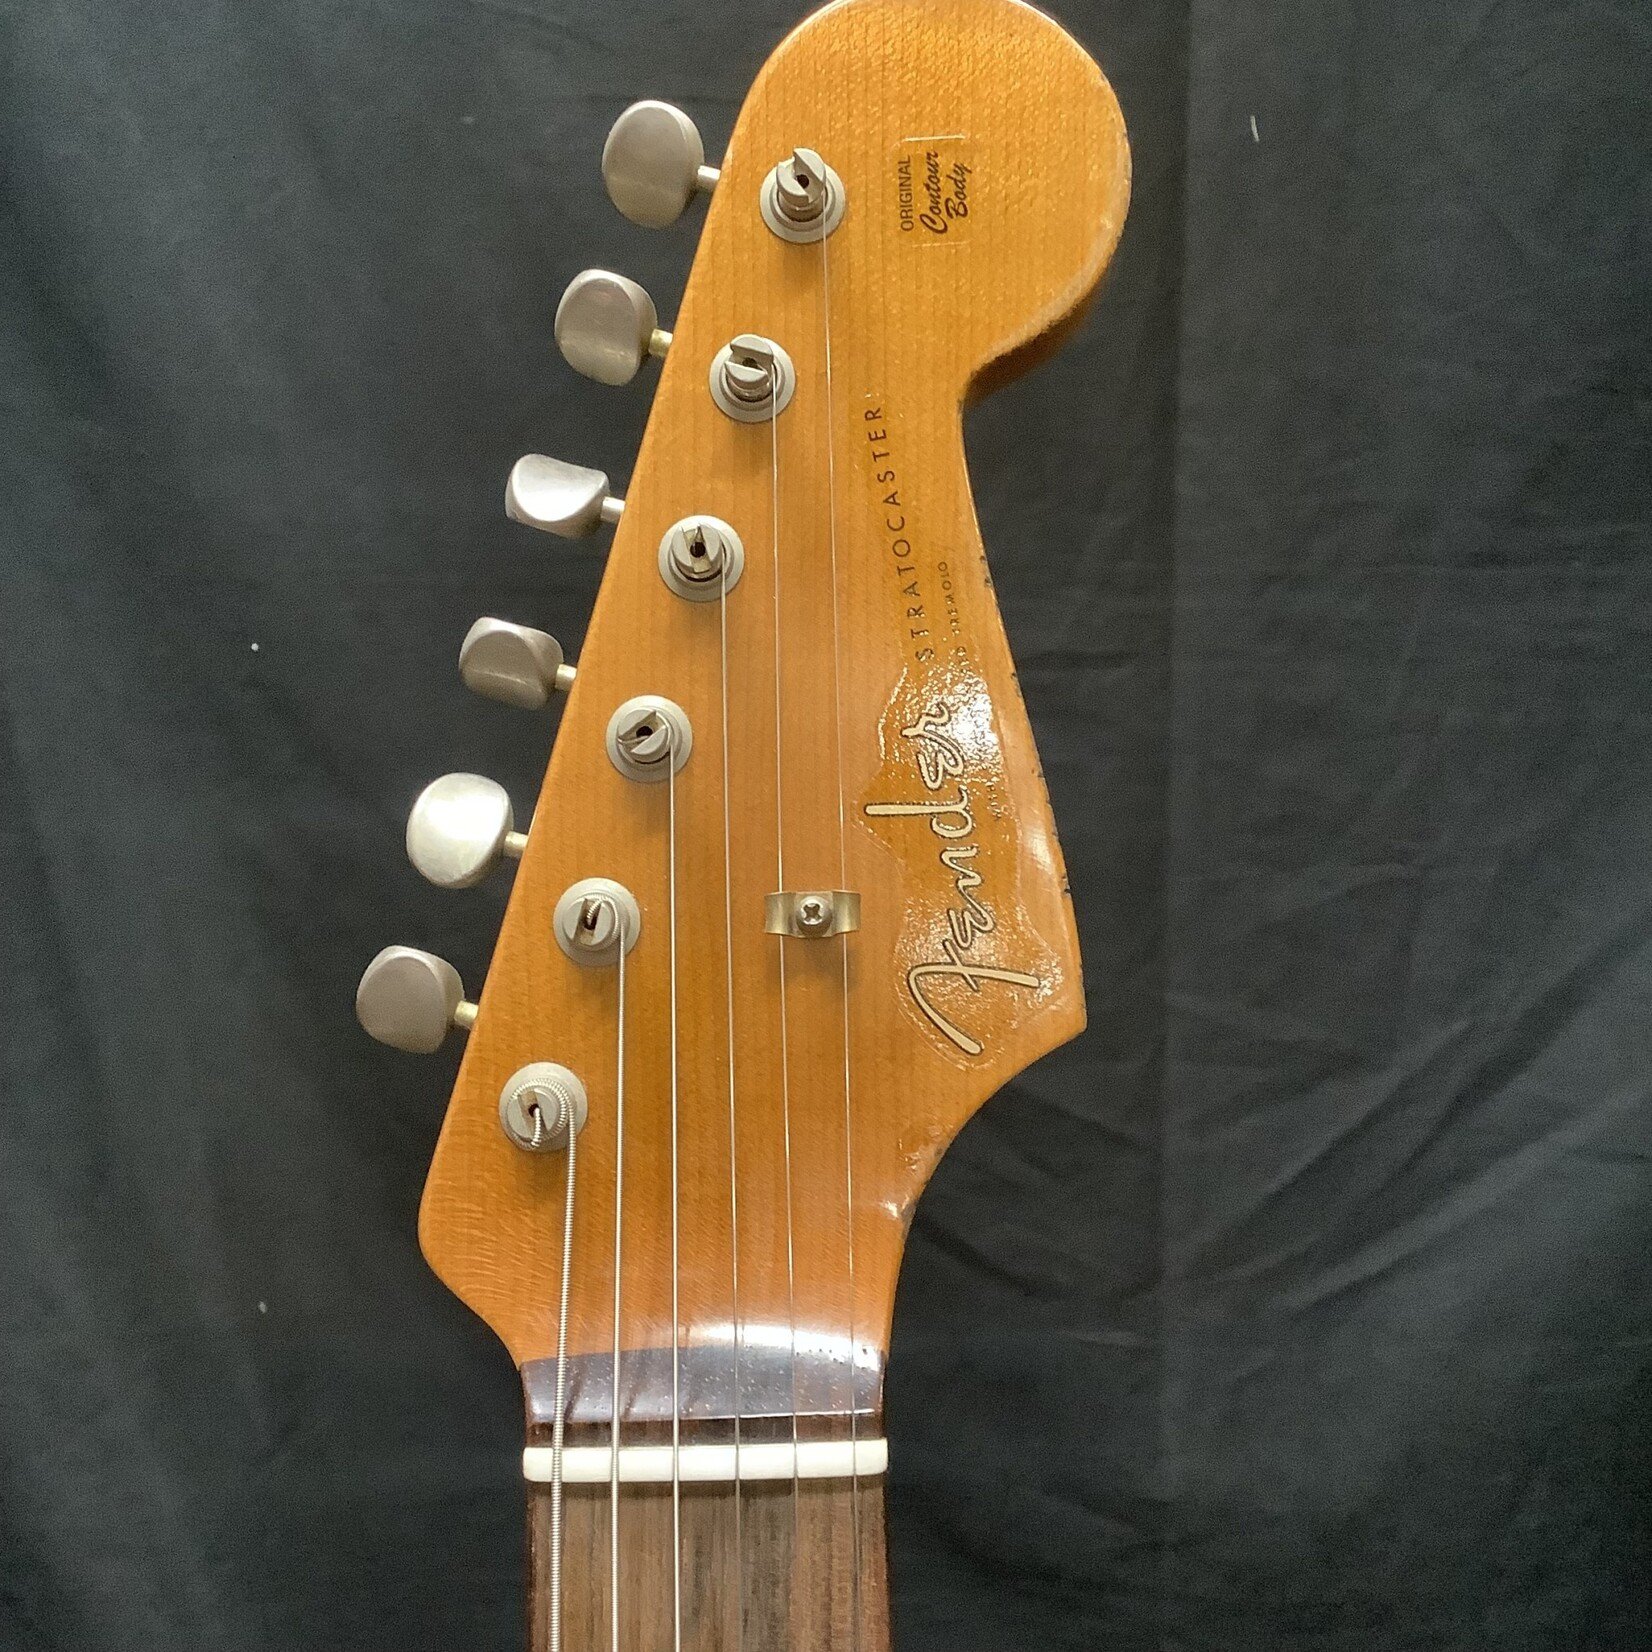 Fender 2017 Fender Custom Shop Ltd '59 Stratocaster Roasted Maple Neck Fiesta Red Heavy Relic